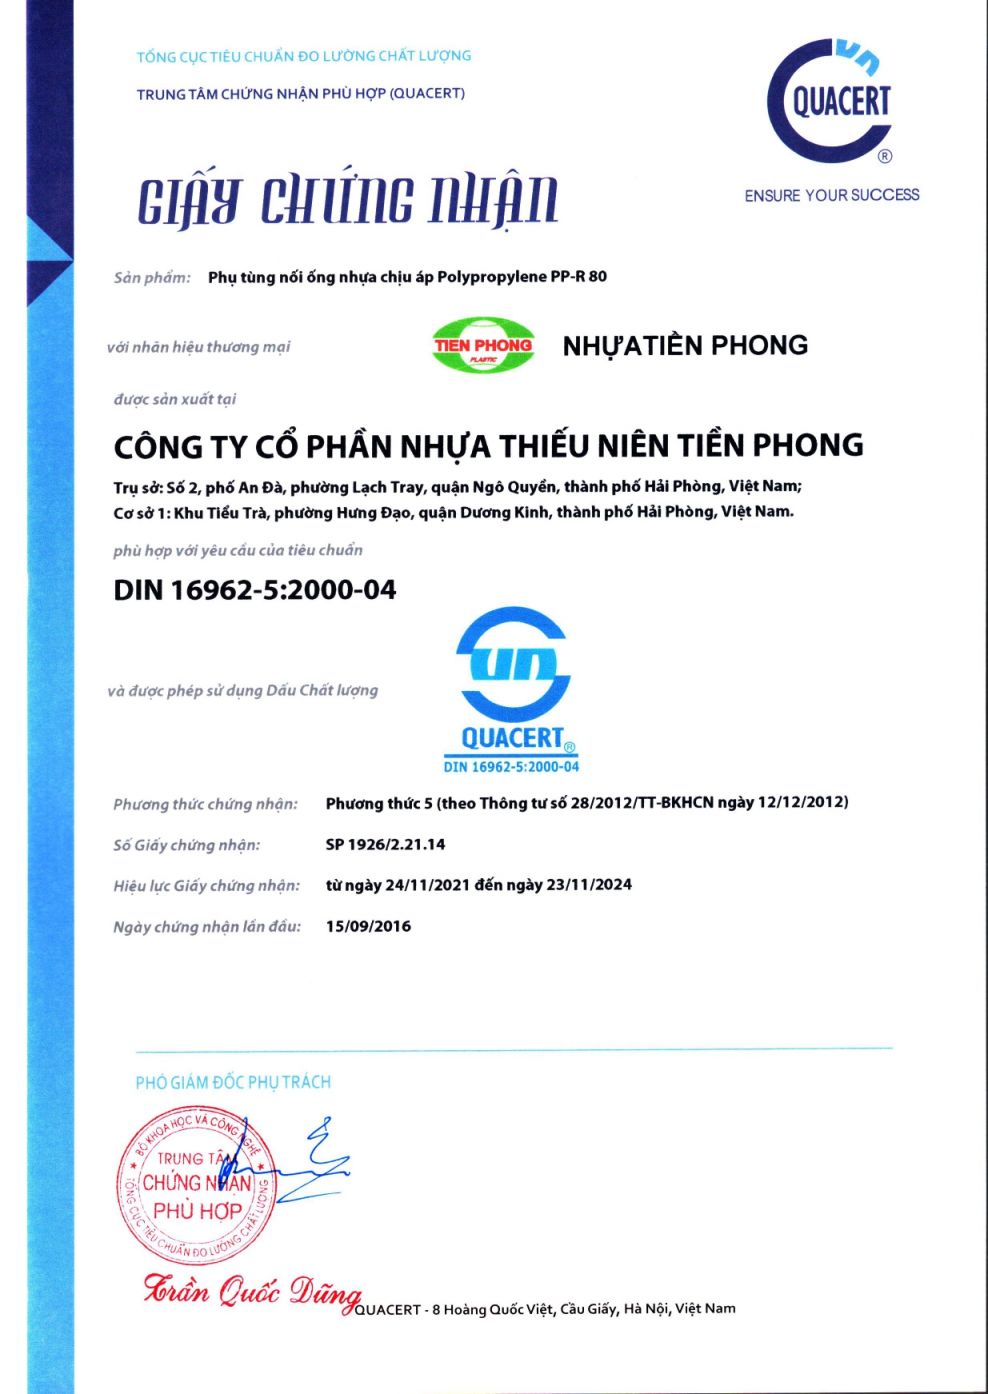 GCN Phụ tùng nối ống nhựa chịu áp PP-R80 DIN 16962-5:2000-04